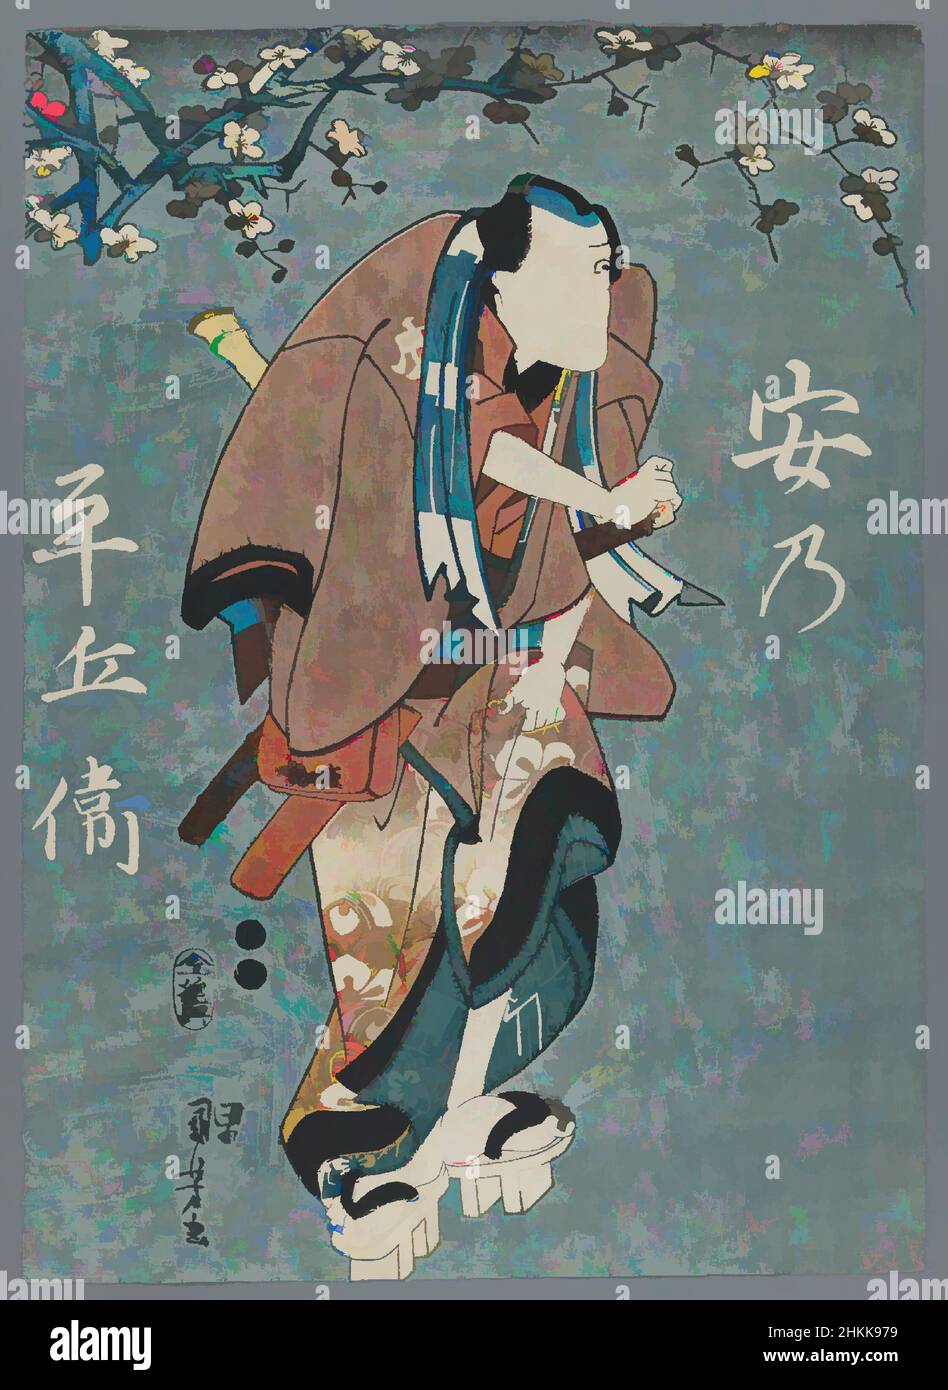 L'art inspiré par les acteurs comme les cinq hommes Manly : Nakamura Utaemon IV comme Hotei Ichiemon, Ichikawa Kuzo II comme un no Heibei, Sawamura Tossho I comme Gokuin Sen'emon, Ichimura Uzaemon XII comme Karigane Bunshichi, et Ichikawa Ebizo V comme Kaminari Shoku, Utagawa Utotagawa XII, Kuniyaemon XII comme une œuvre modernisée par Artotagawa, 1798-1861, KosSplash classique. Formes, couleur et valeur, impact visuel accrocheur sur l'art émotions par la liberté d'œuvres d'art d'une manière contemporaine. Un message intemporel qui cherche une nouvelle direction créative. Artistes qui se tournent vers le support numérique et créent le NFT Artotop Banque D'Images